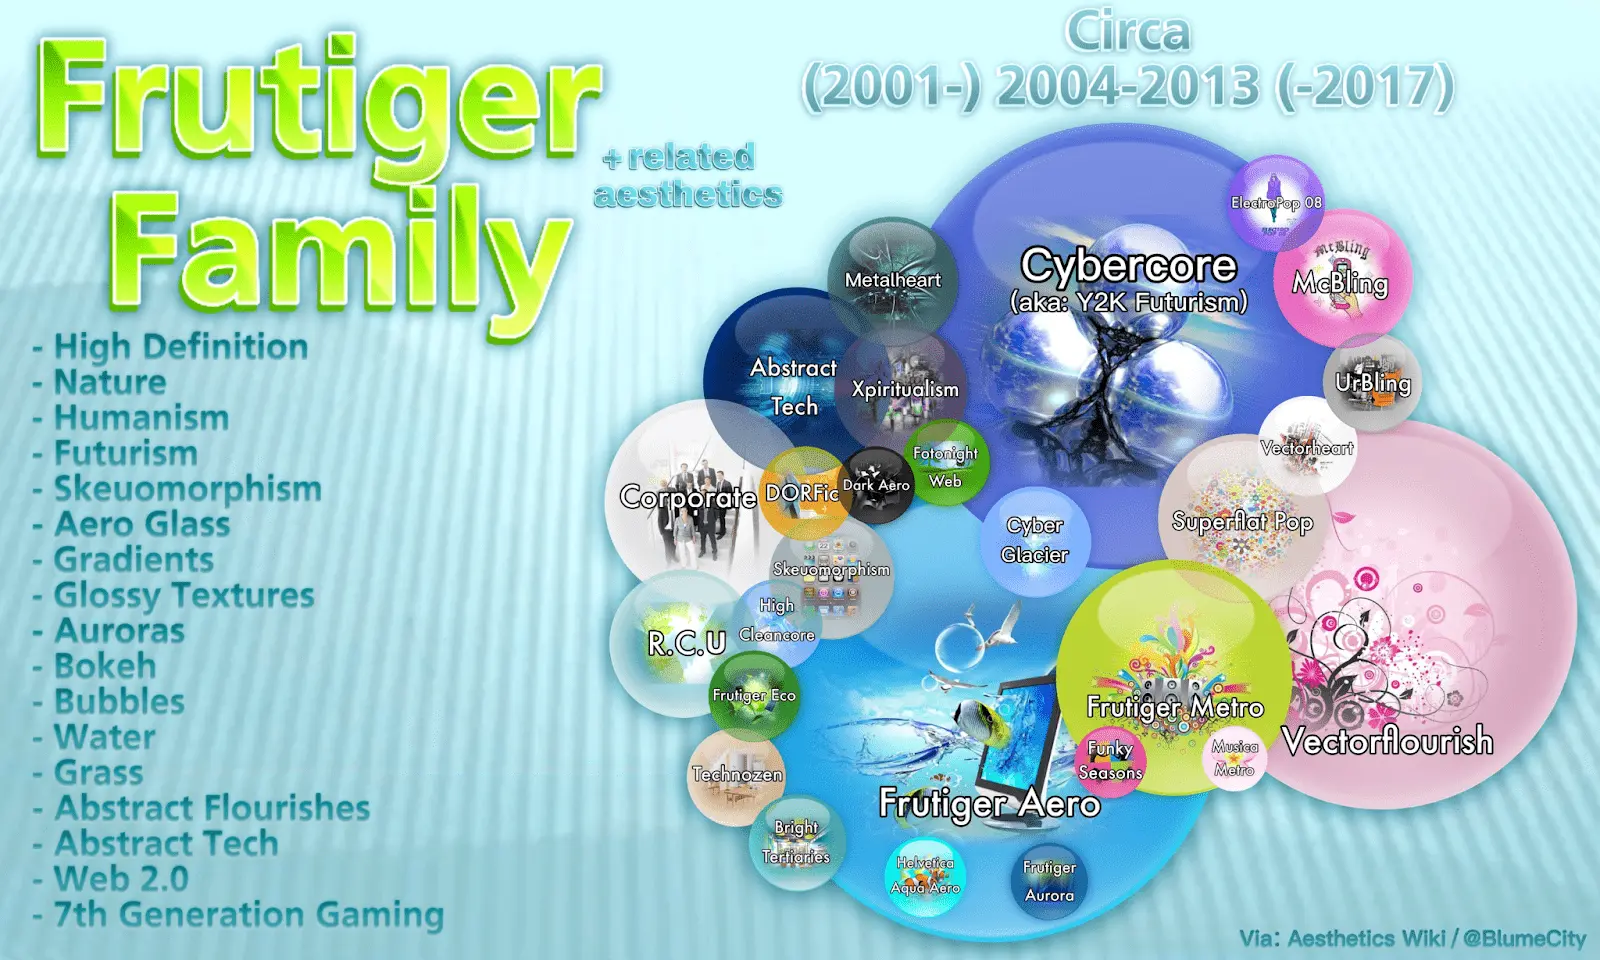 Un diagramma che mostra i vari sottogeneri ed estetiche correlate all'interno della famiglia Frutiger Aero